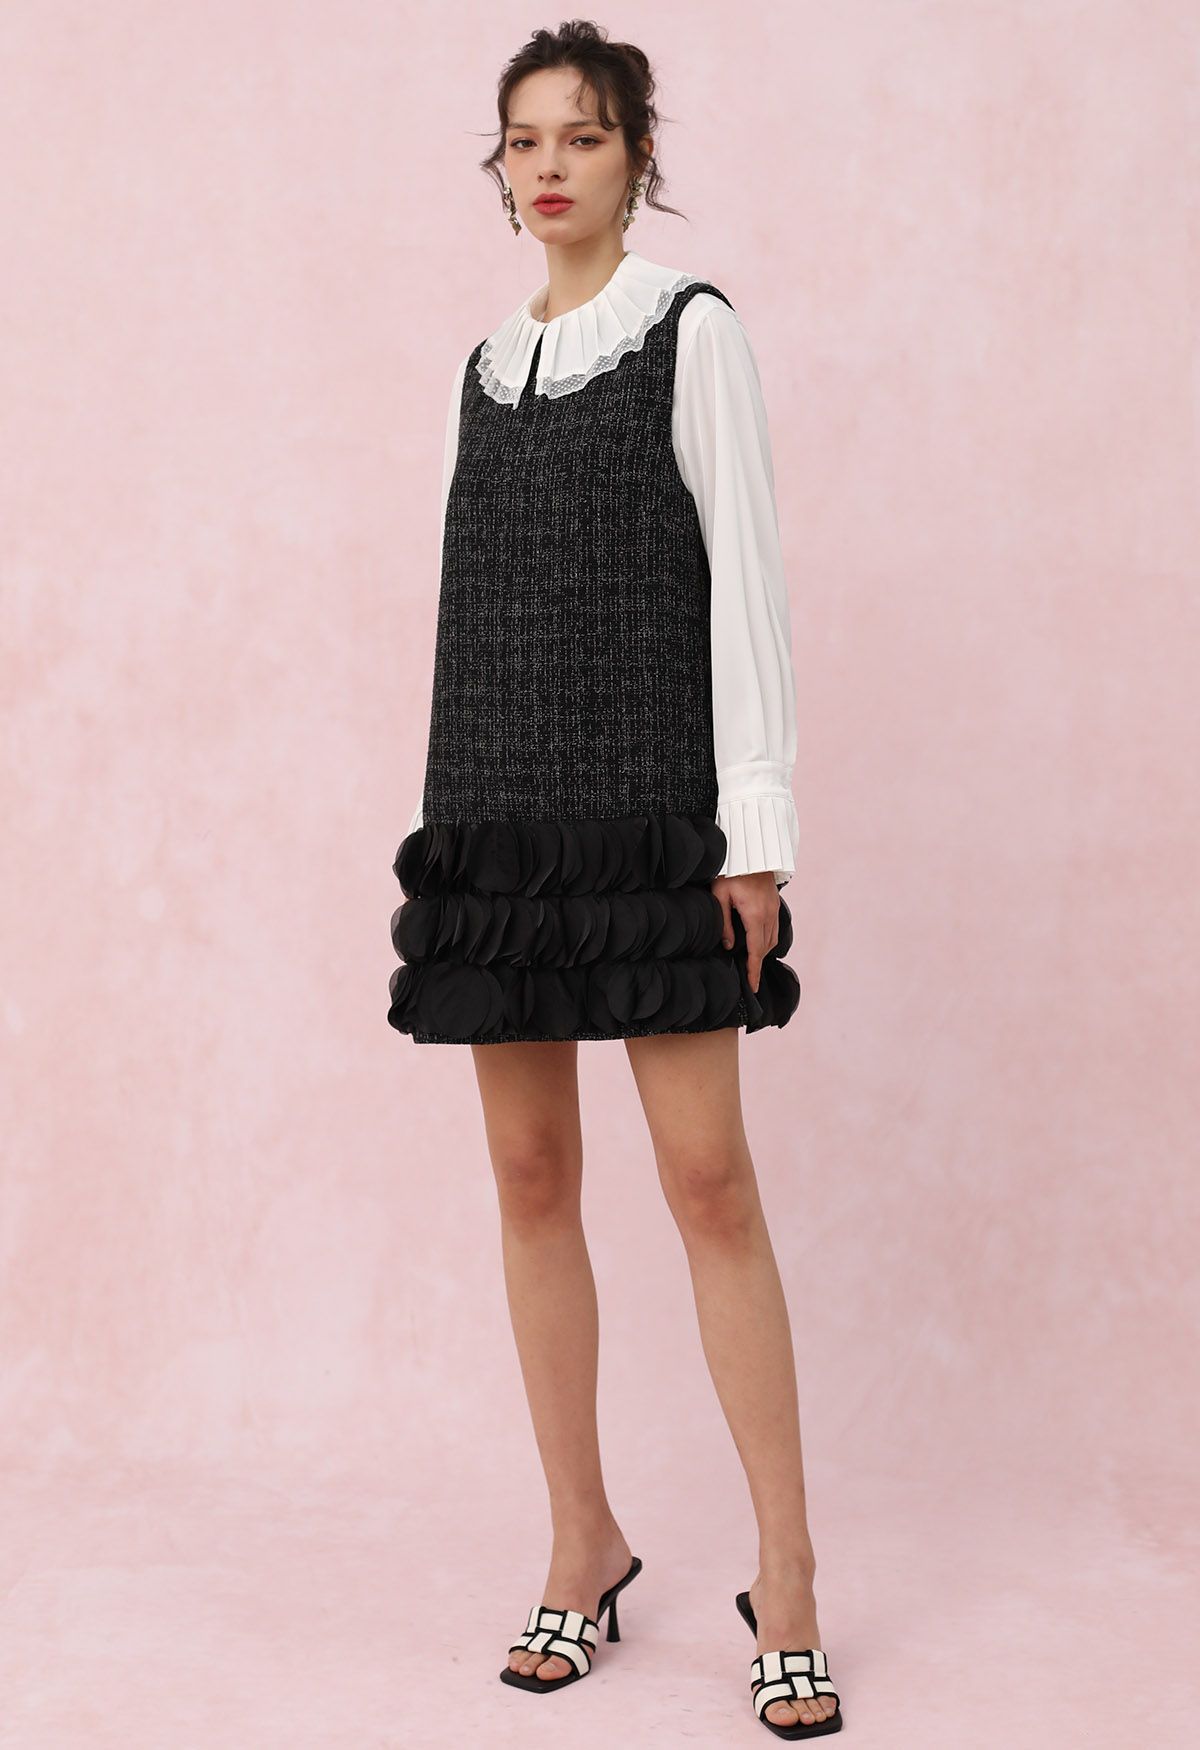 3D Petal Hemline Tweed Sleeveless Dress in Black